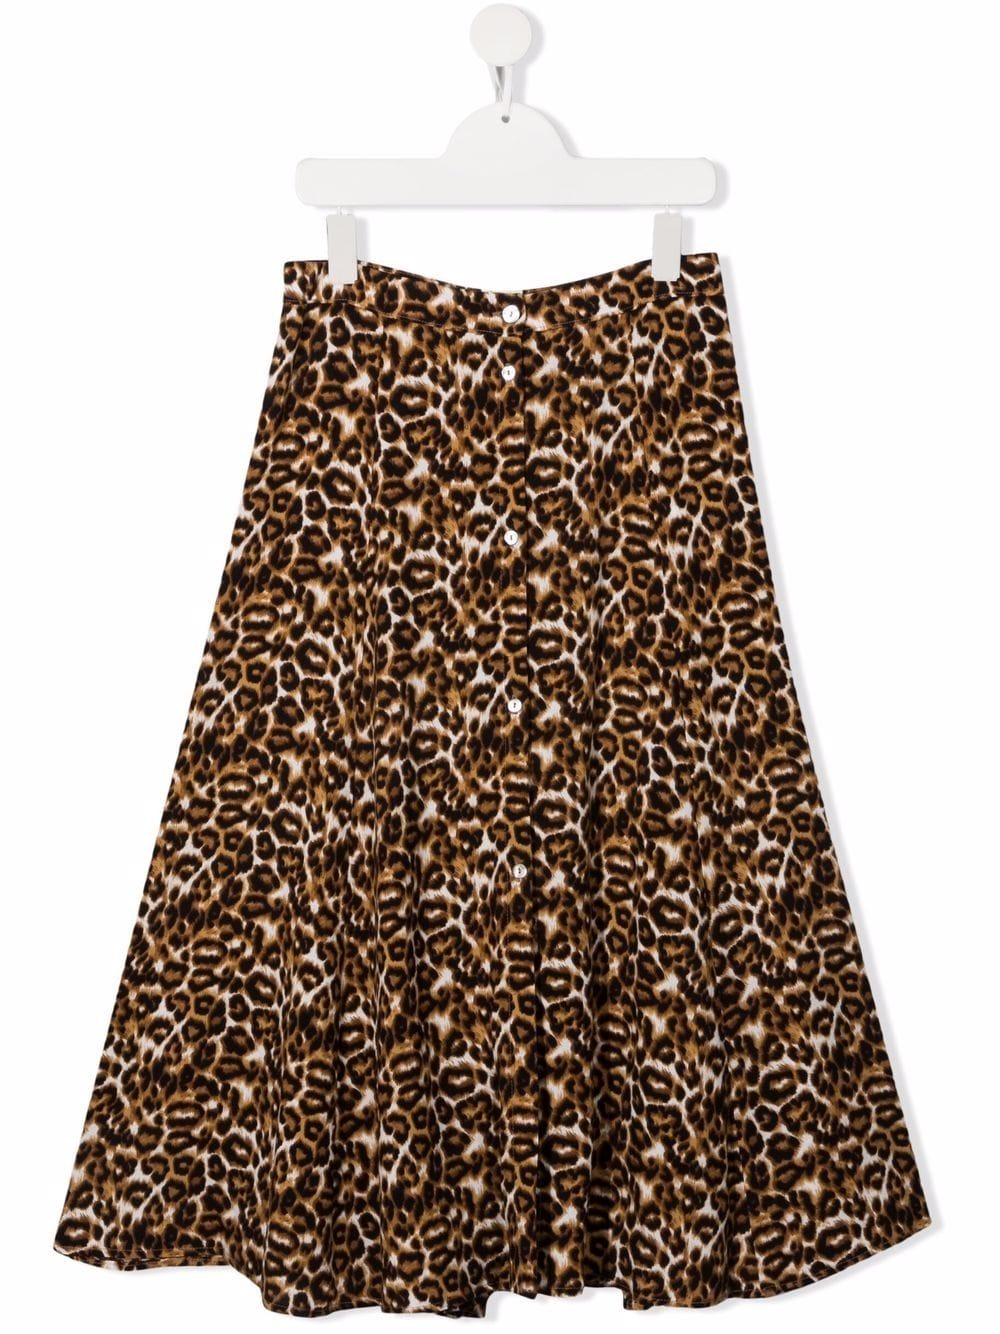 фото Caffe' d'orzo юбка с леопардовым принтом